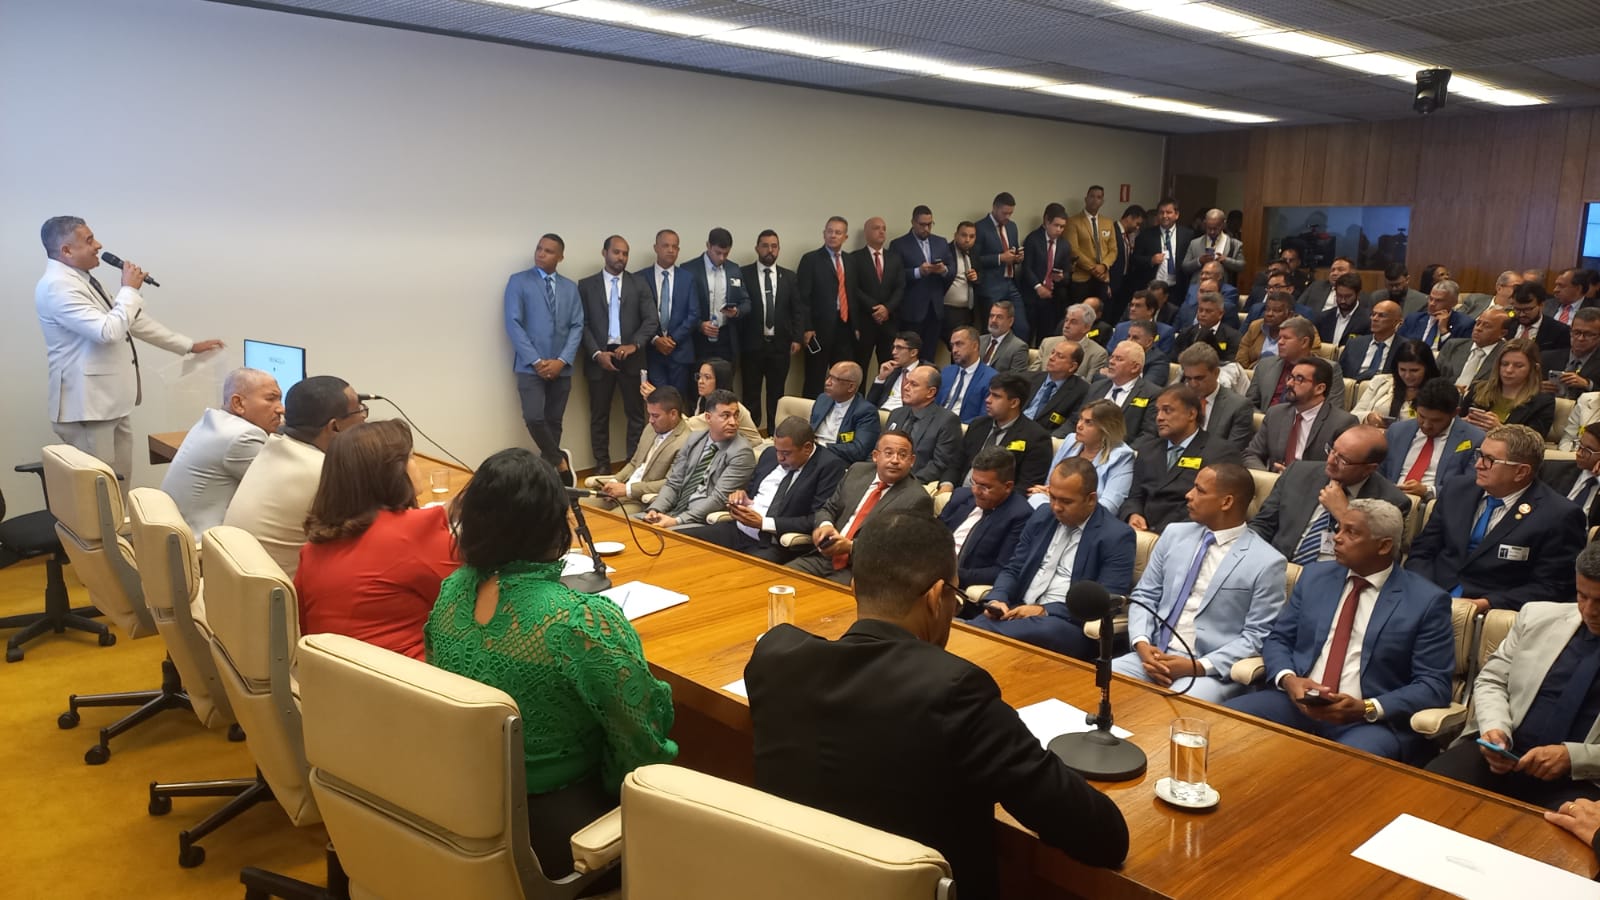 Personalidades elogiam Eremita, por levar a Brasília uma sessão da Câmara